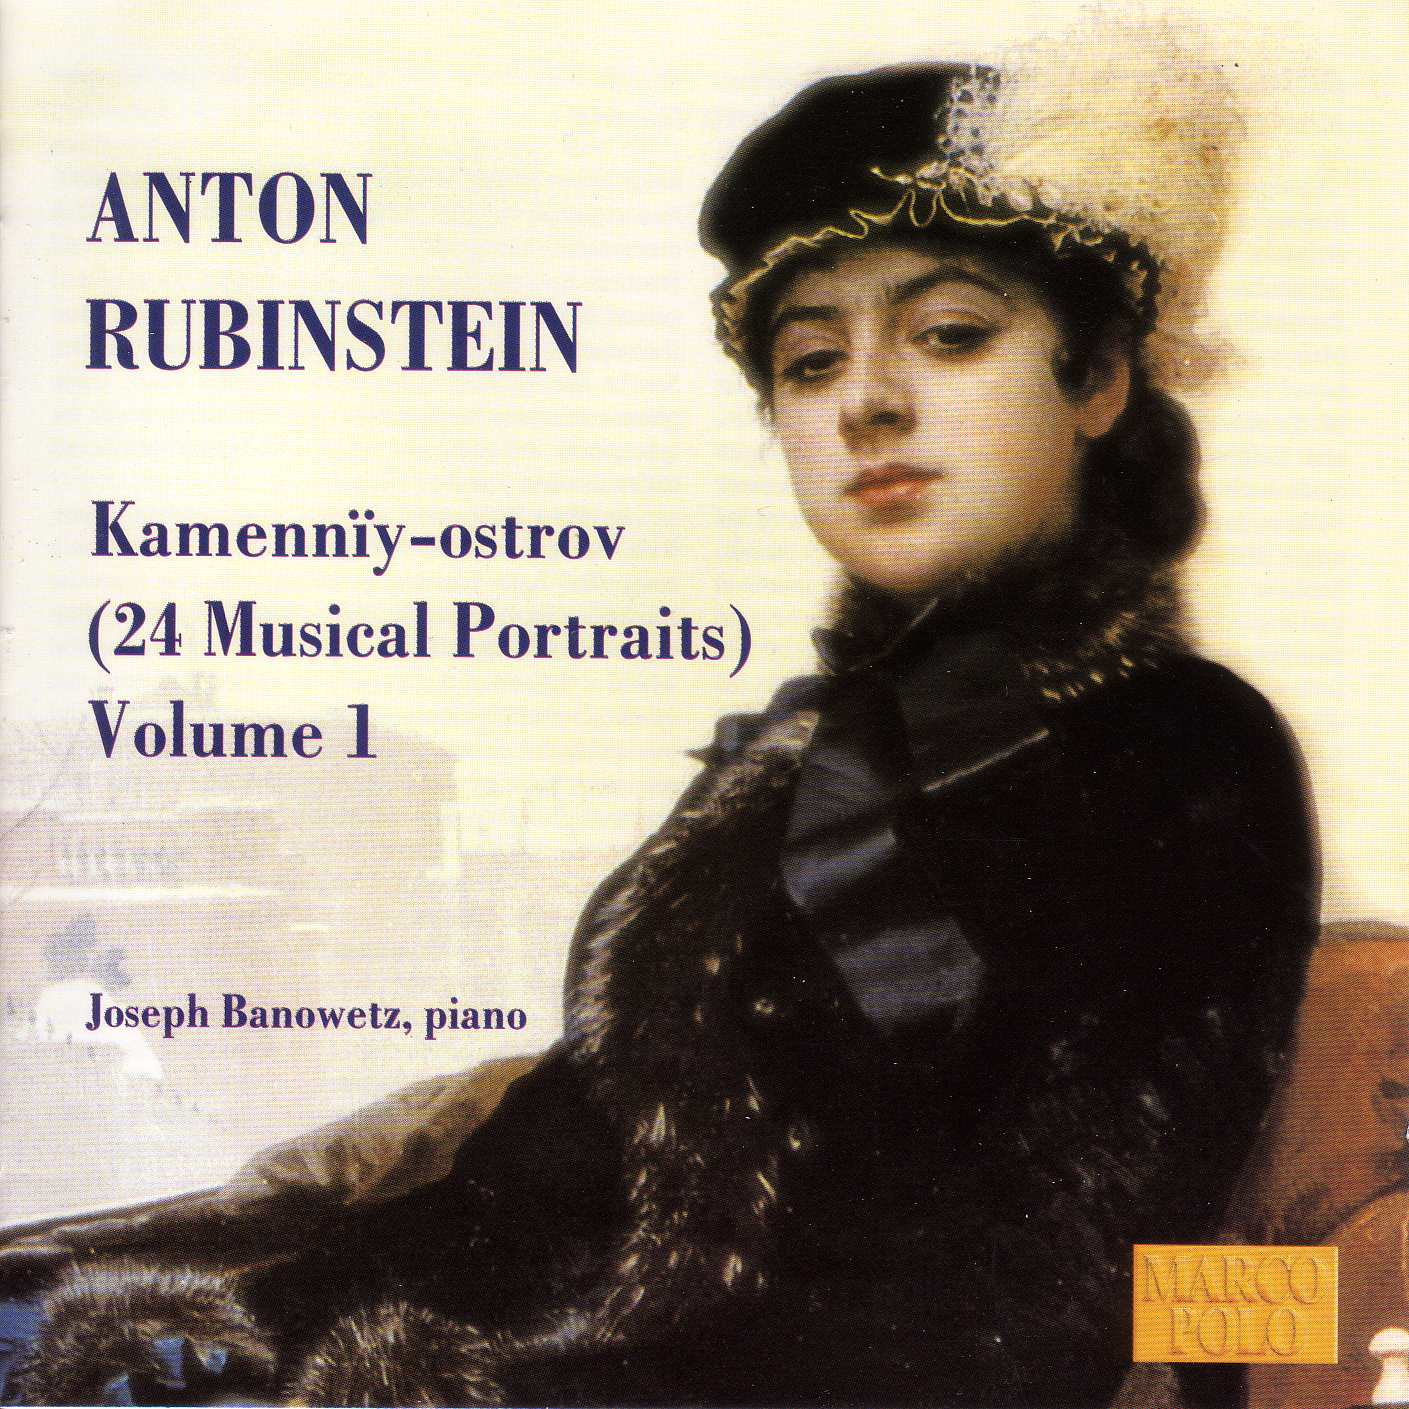 Anton Rubinstein - Wikipedia